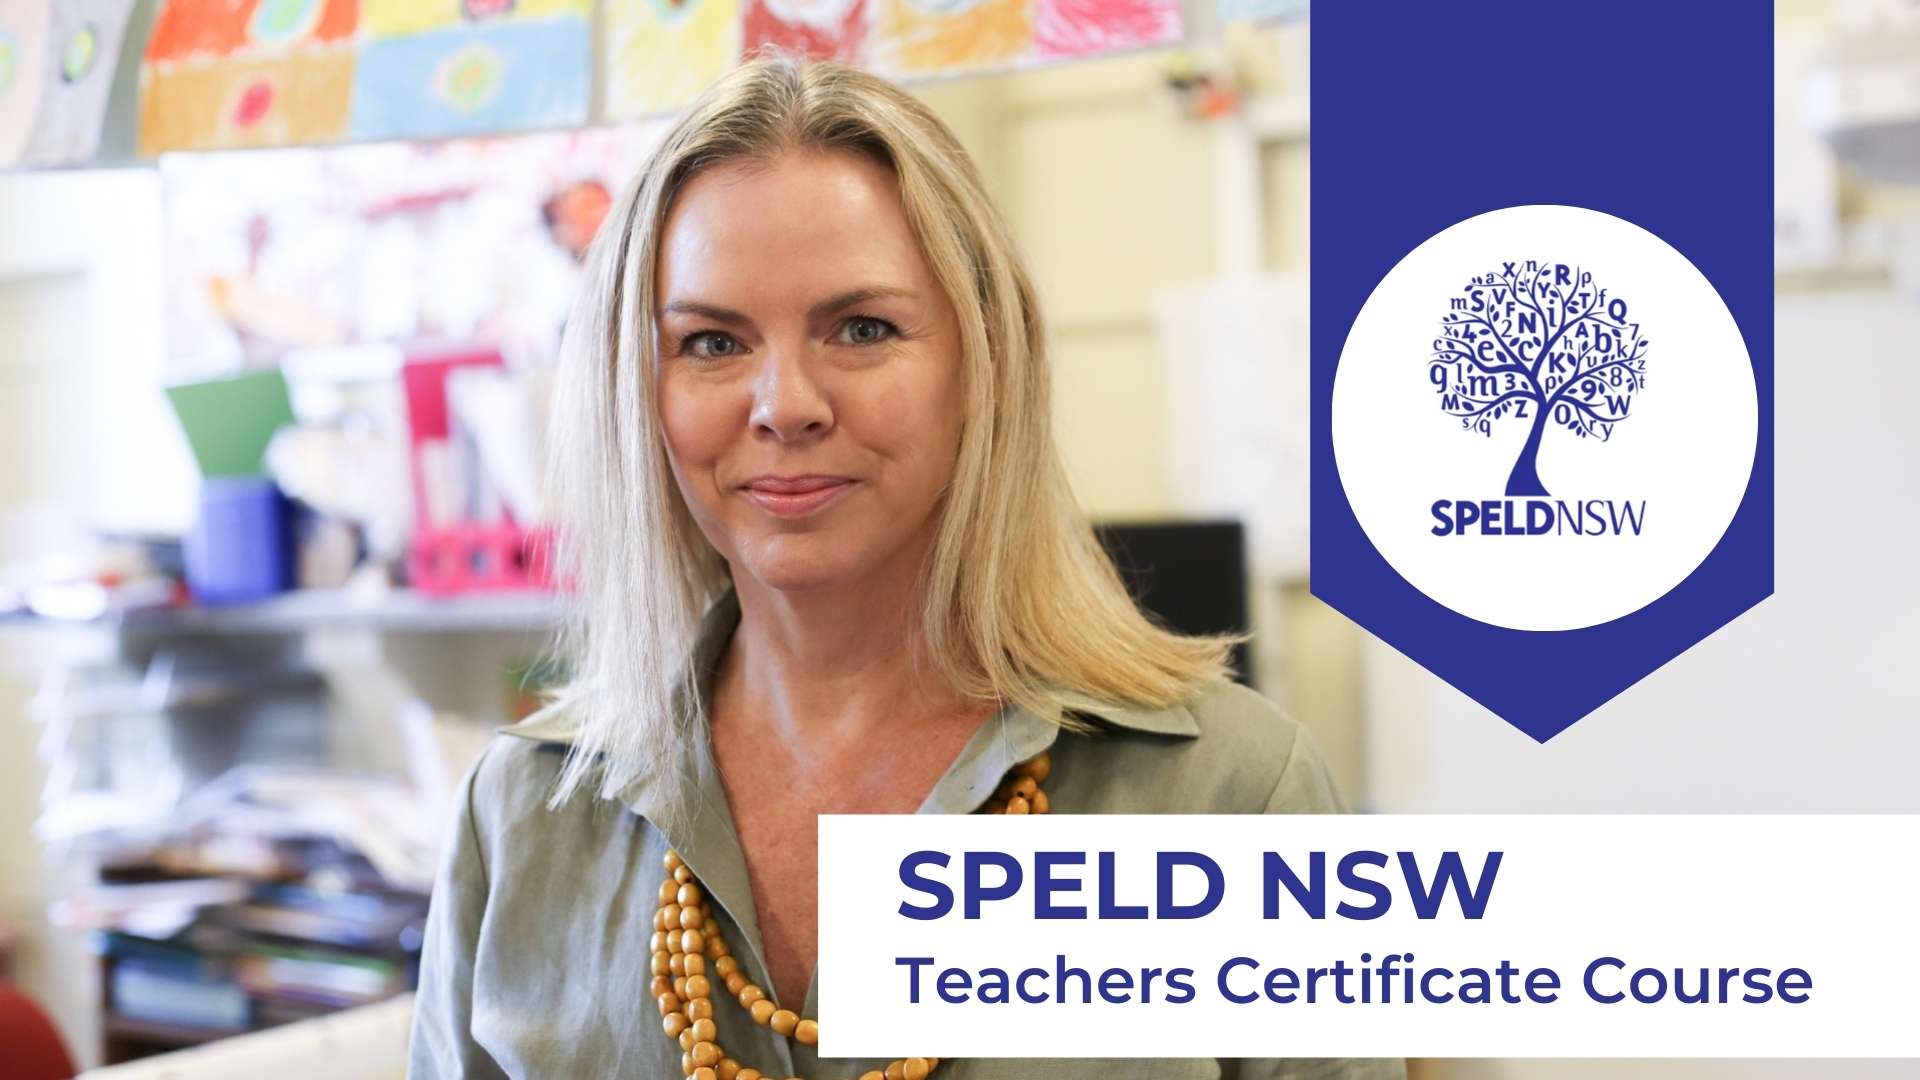 Teachers Certificate Course SPELD NSW